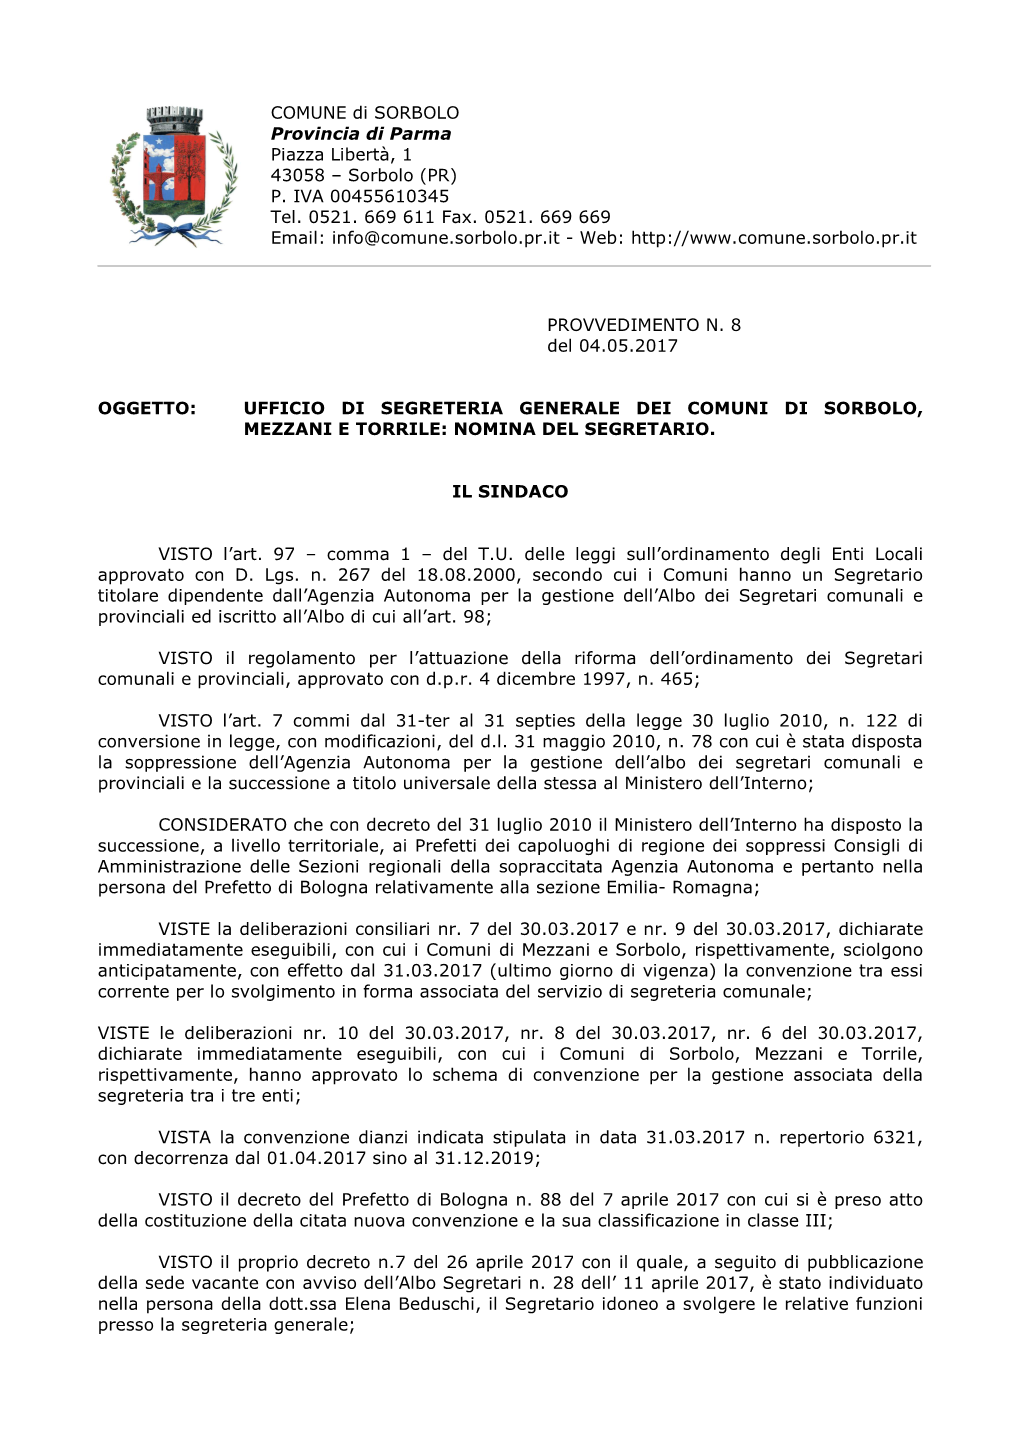 Decreto Di Nomina Del Segretario Generale.Pdf